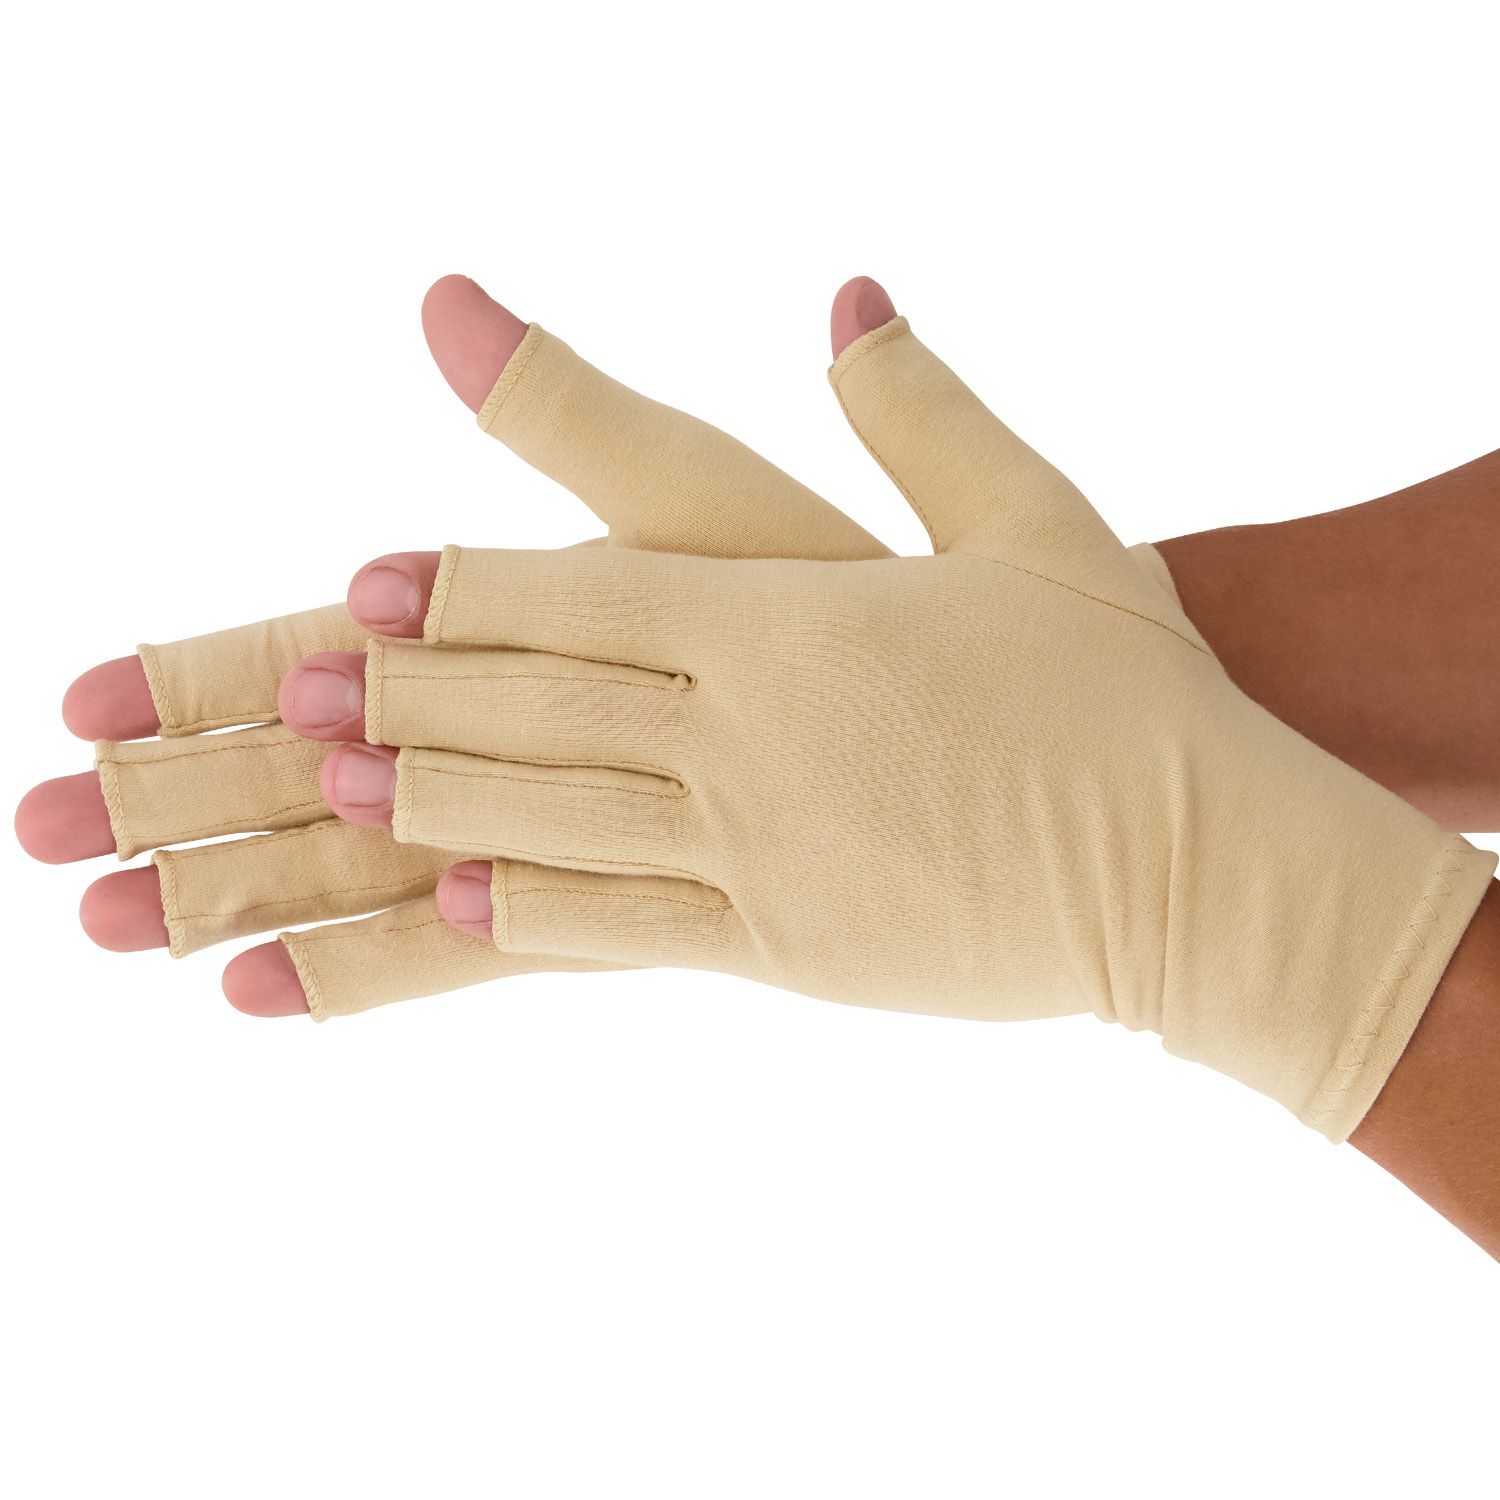 medidu rheumatoid arthritis osteoarthritis gloves product explanation